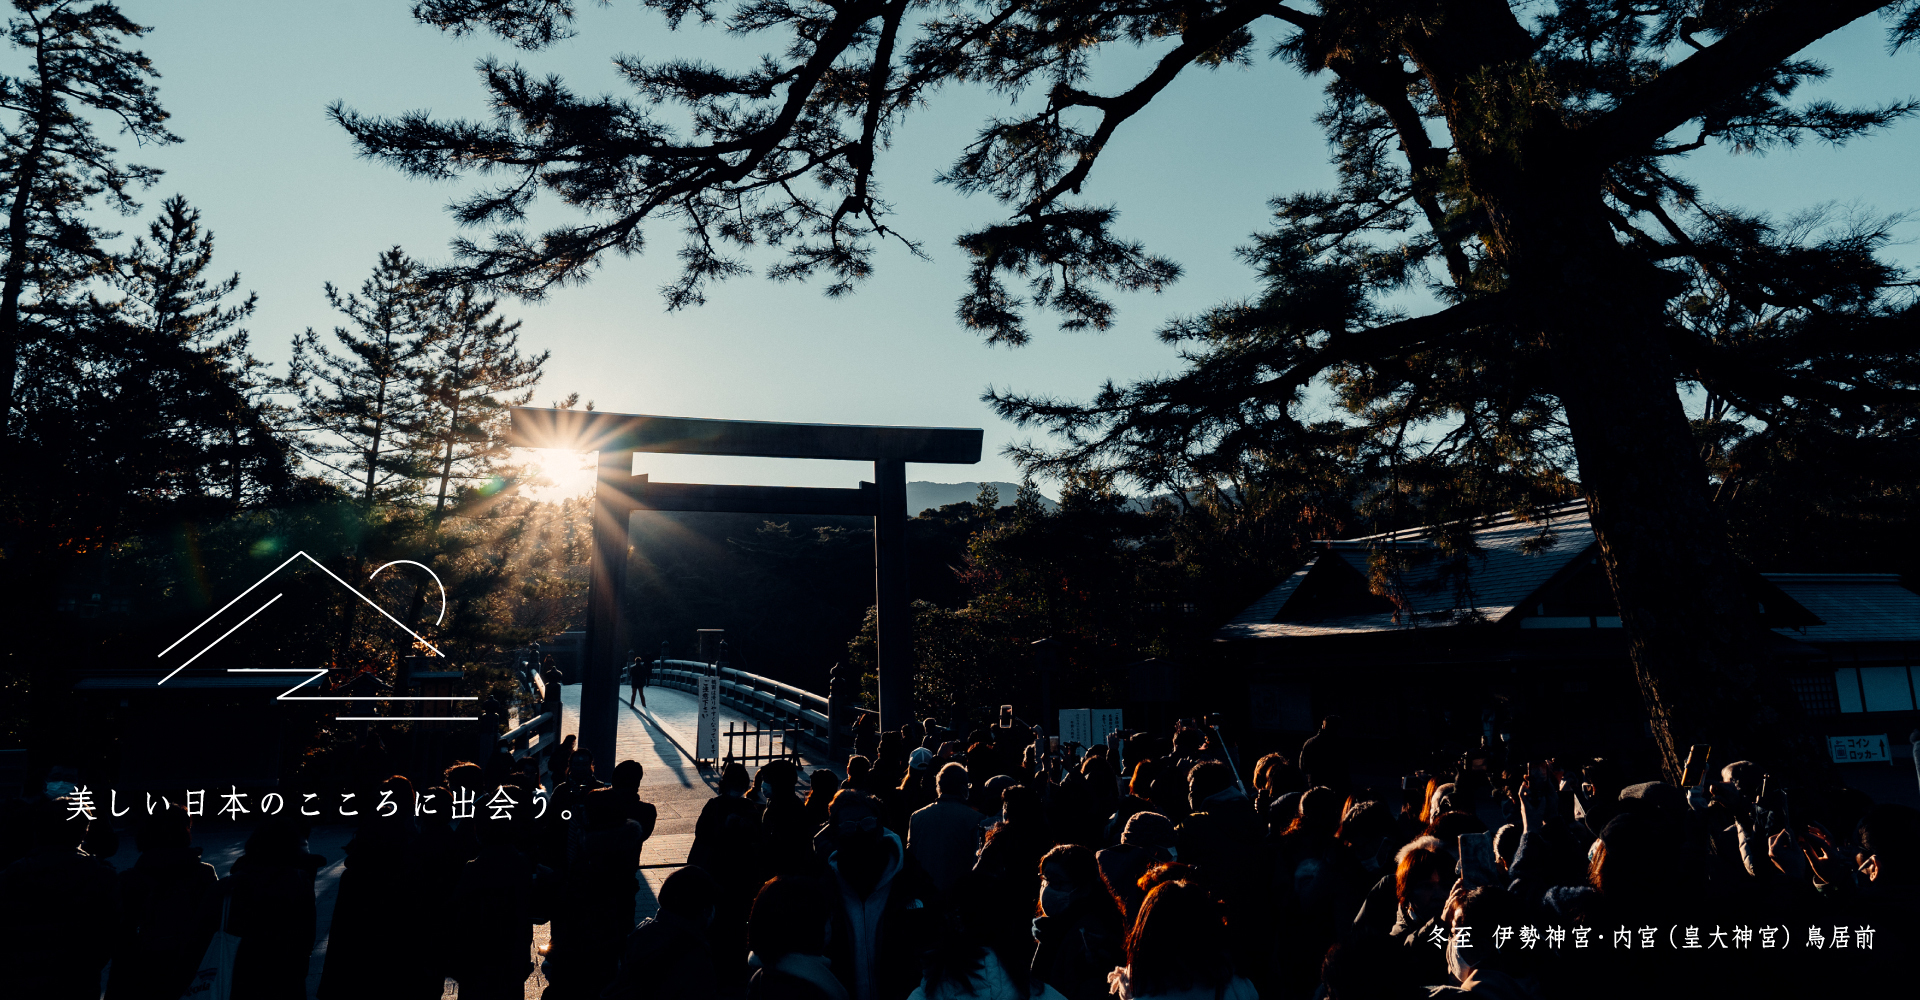 Winter solstice Ise Grand Shrine/Inner Shrine (Imperial Grand Shrine) Torii